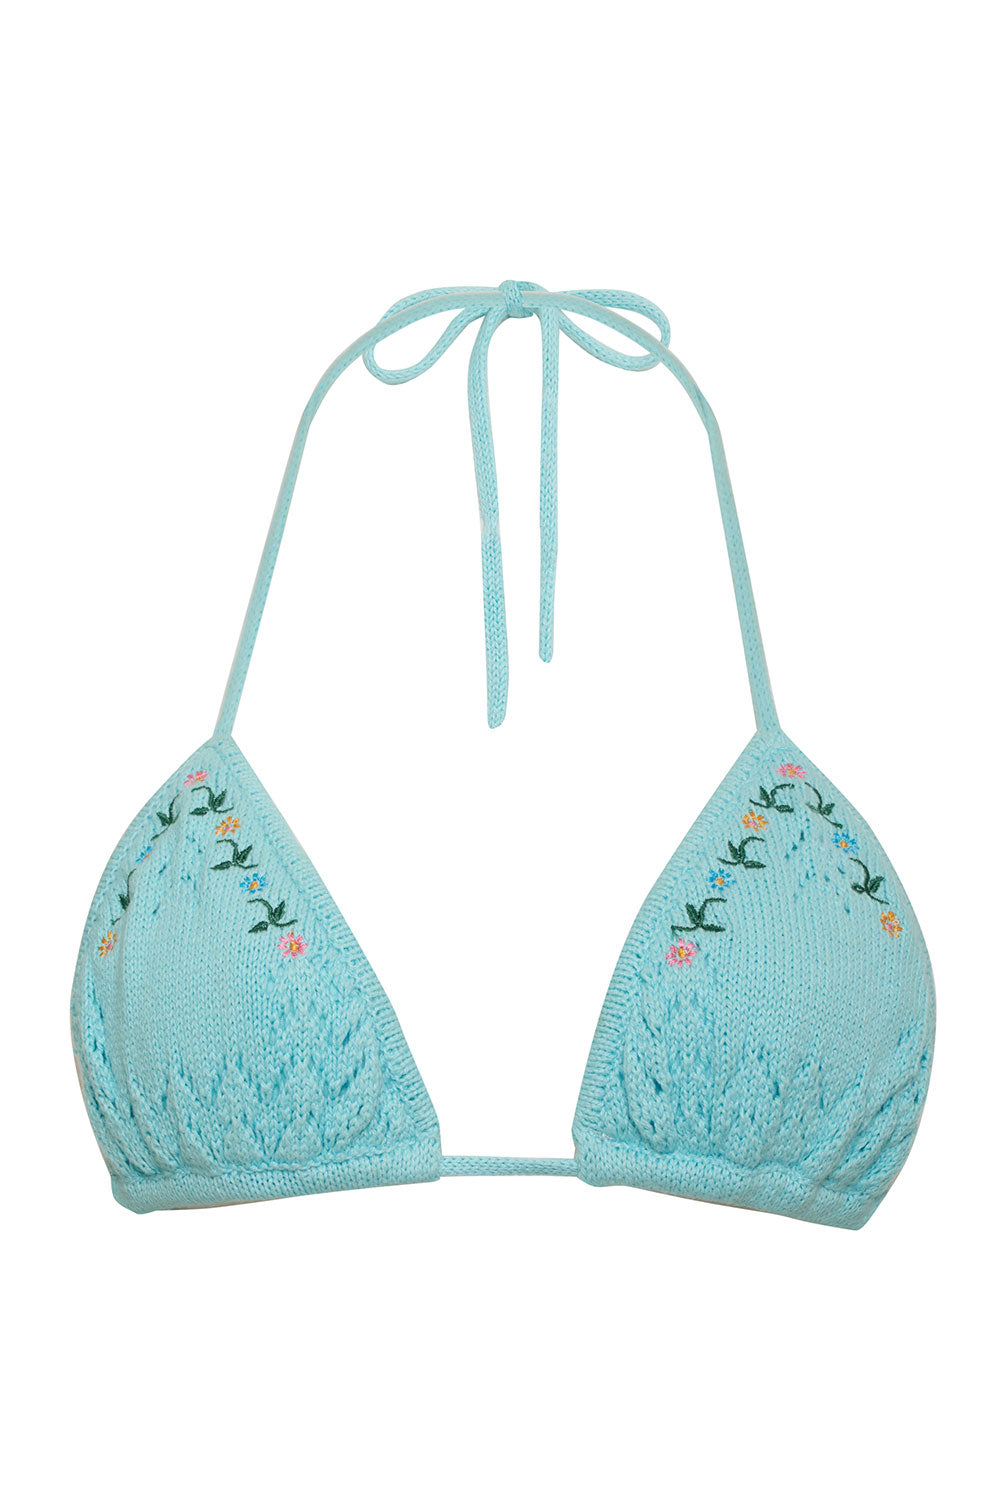 x GUIZIO Tide Crochet Triangle Bikini Top - Aqua Embroidery